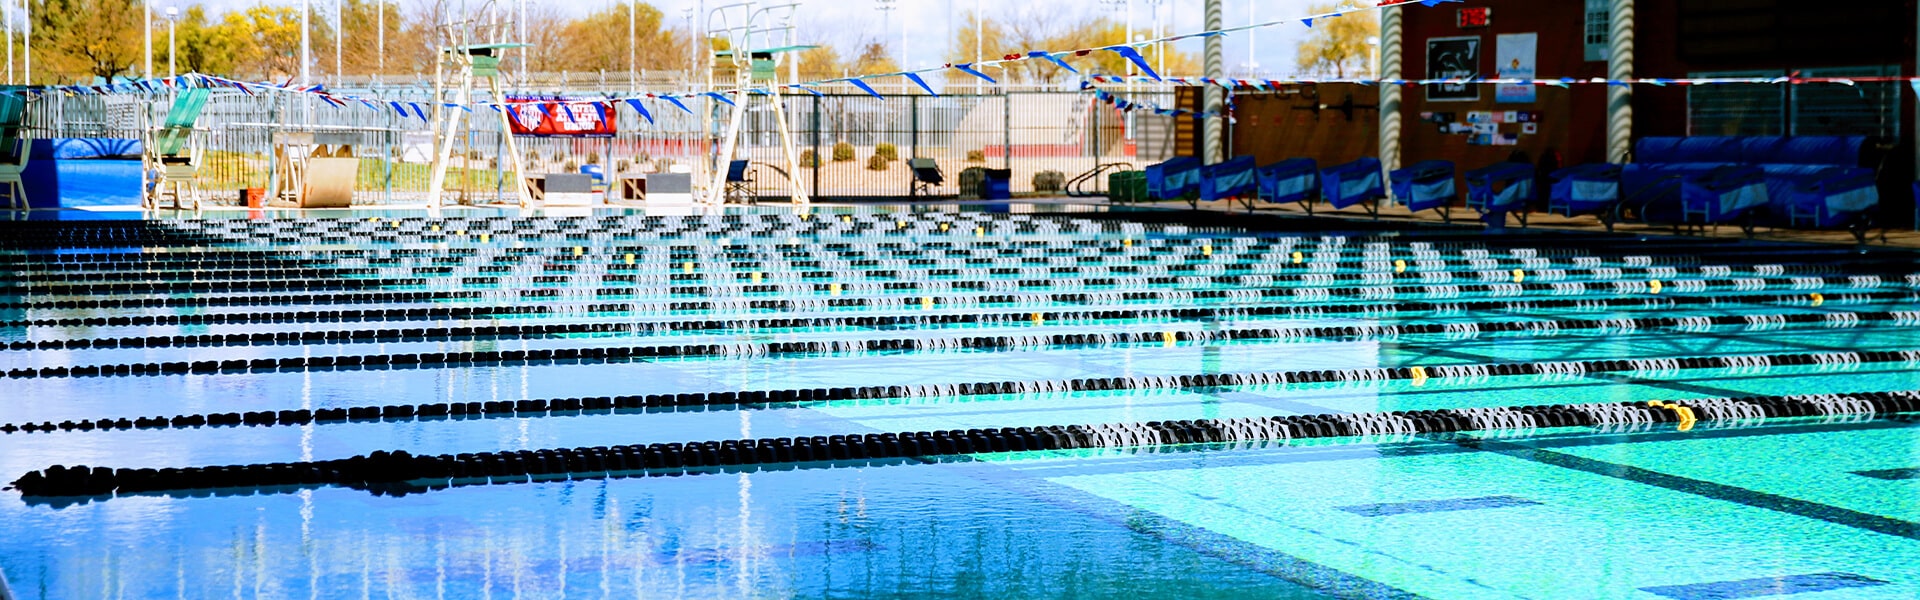 Large Swimming Pool | VOS YMCA